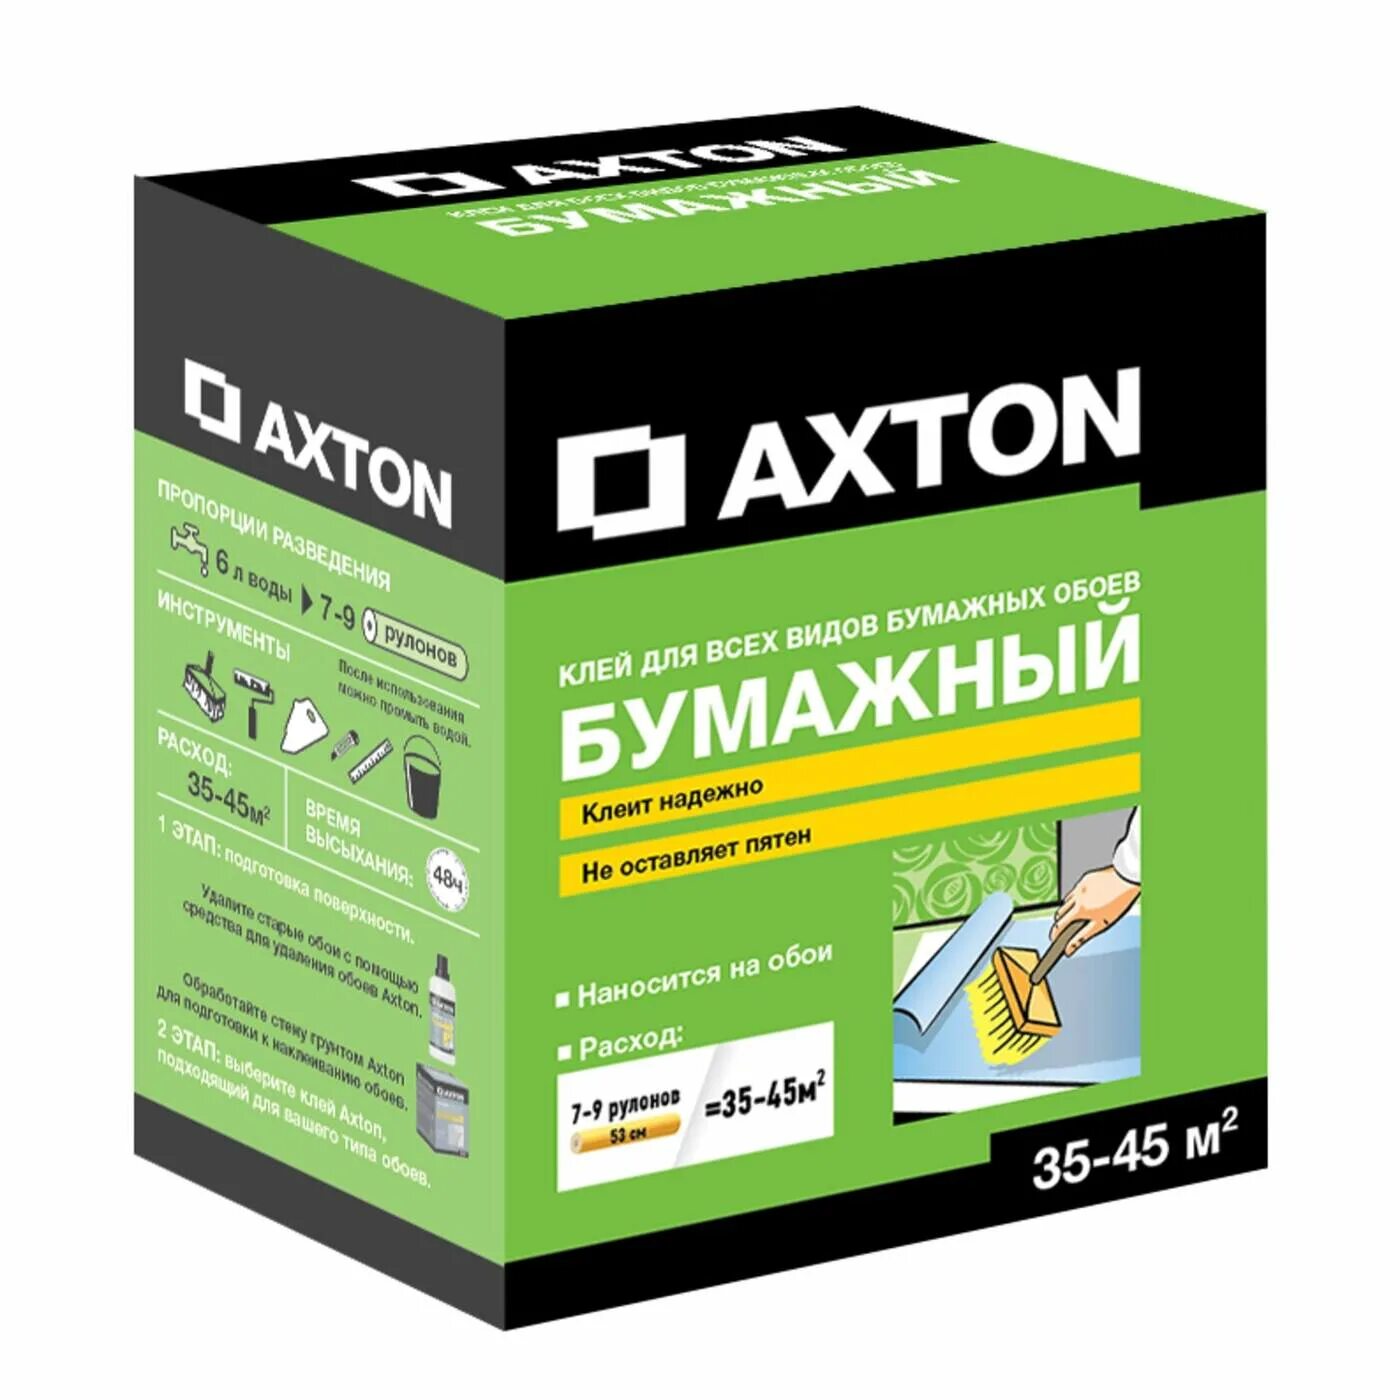 Клей для бумажных обоев Axton 35-45 м². Axton клей обойный. Клей для бумажных обоев Axton. Леруа Мерлен клей Axton. Клей для обоев рейтинг